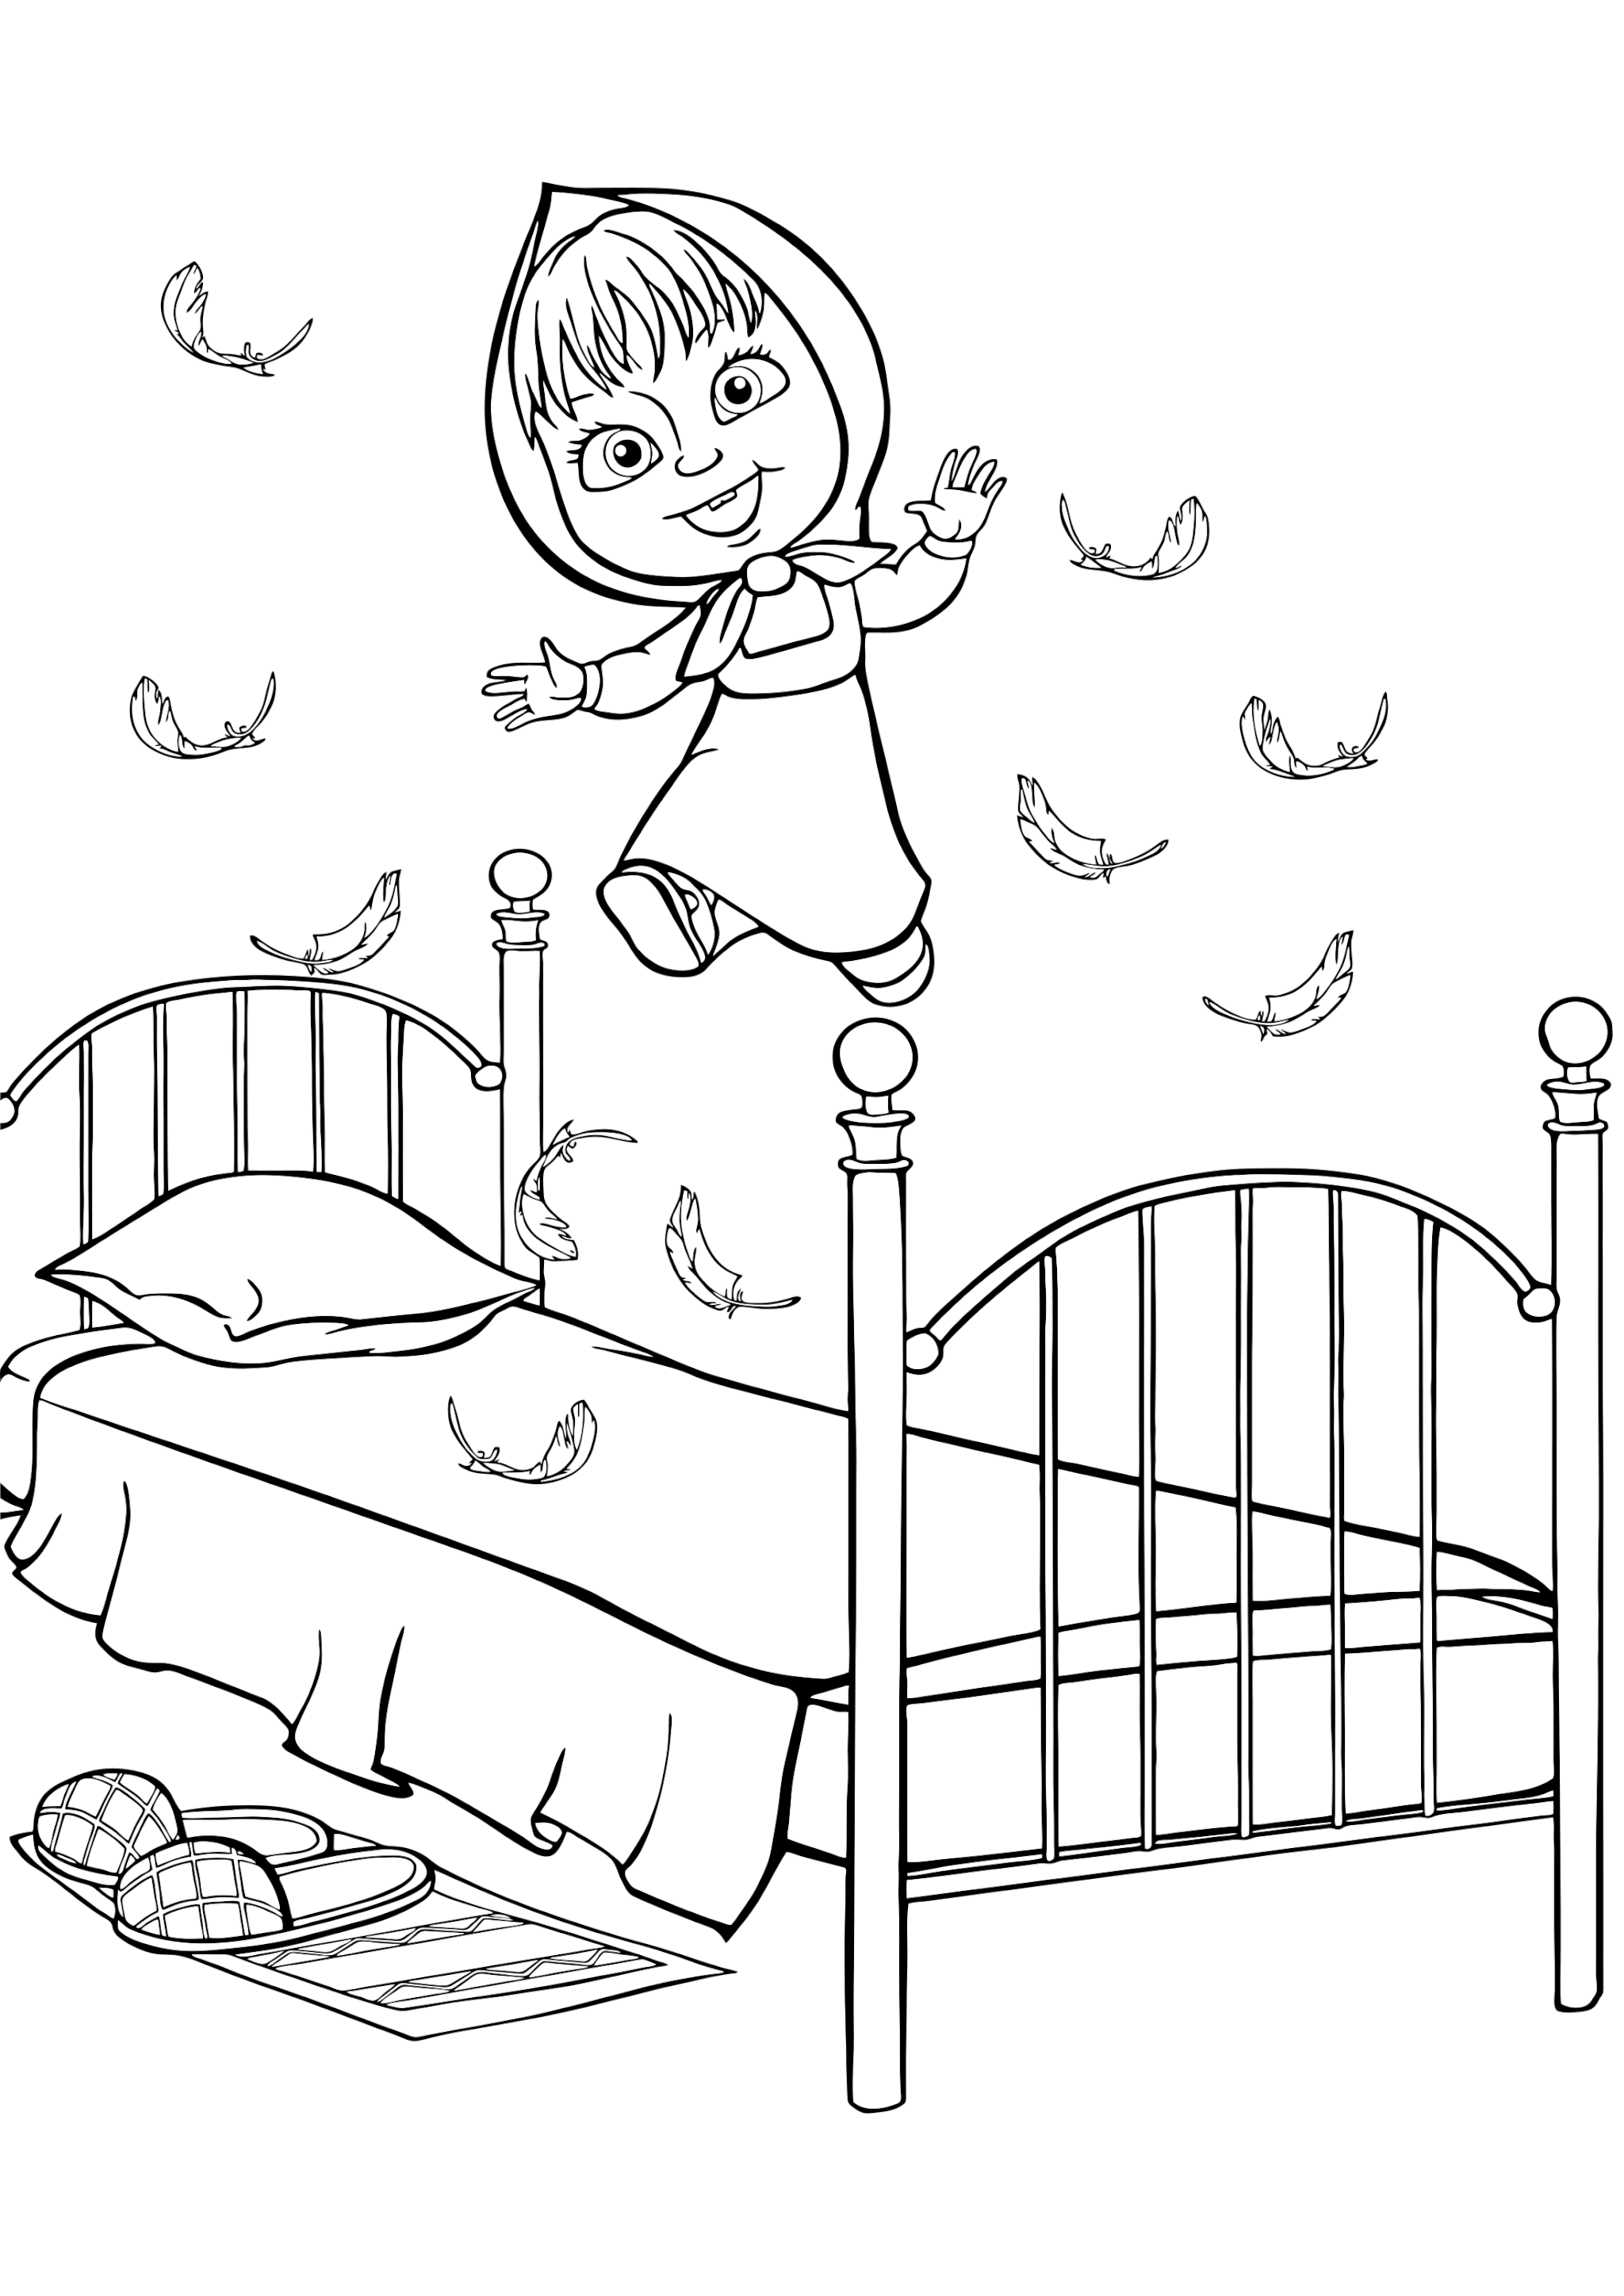 Раскраска Маша прыгает на кровати